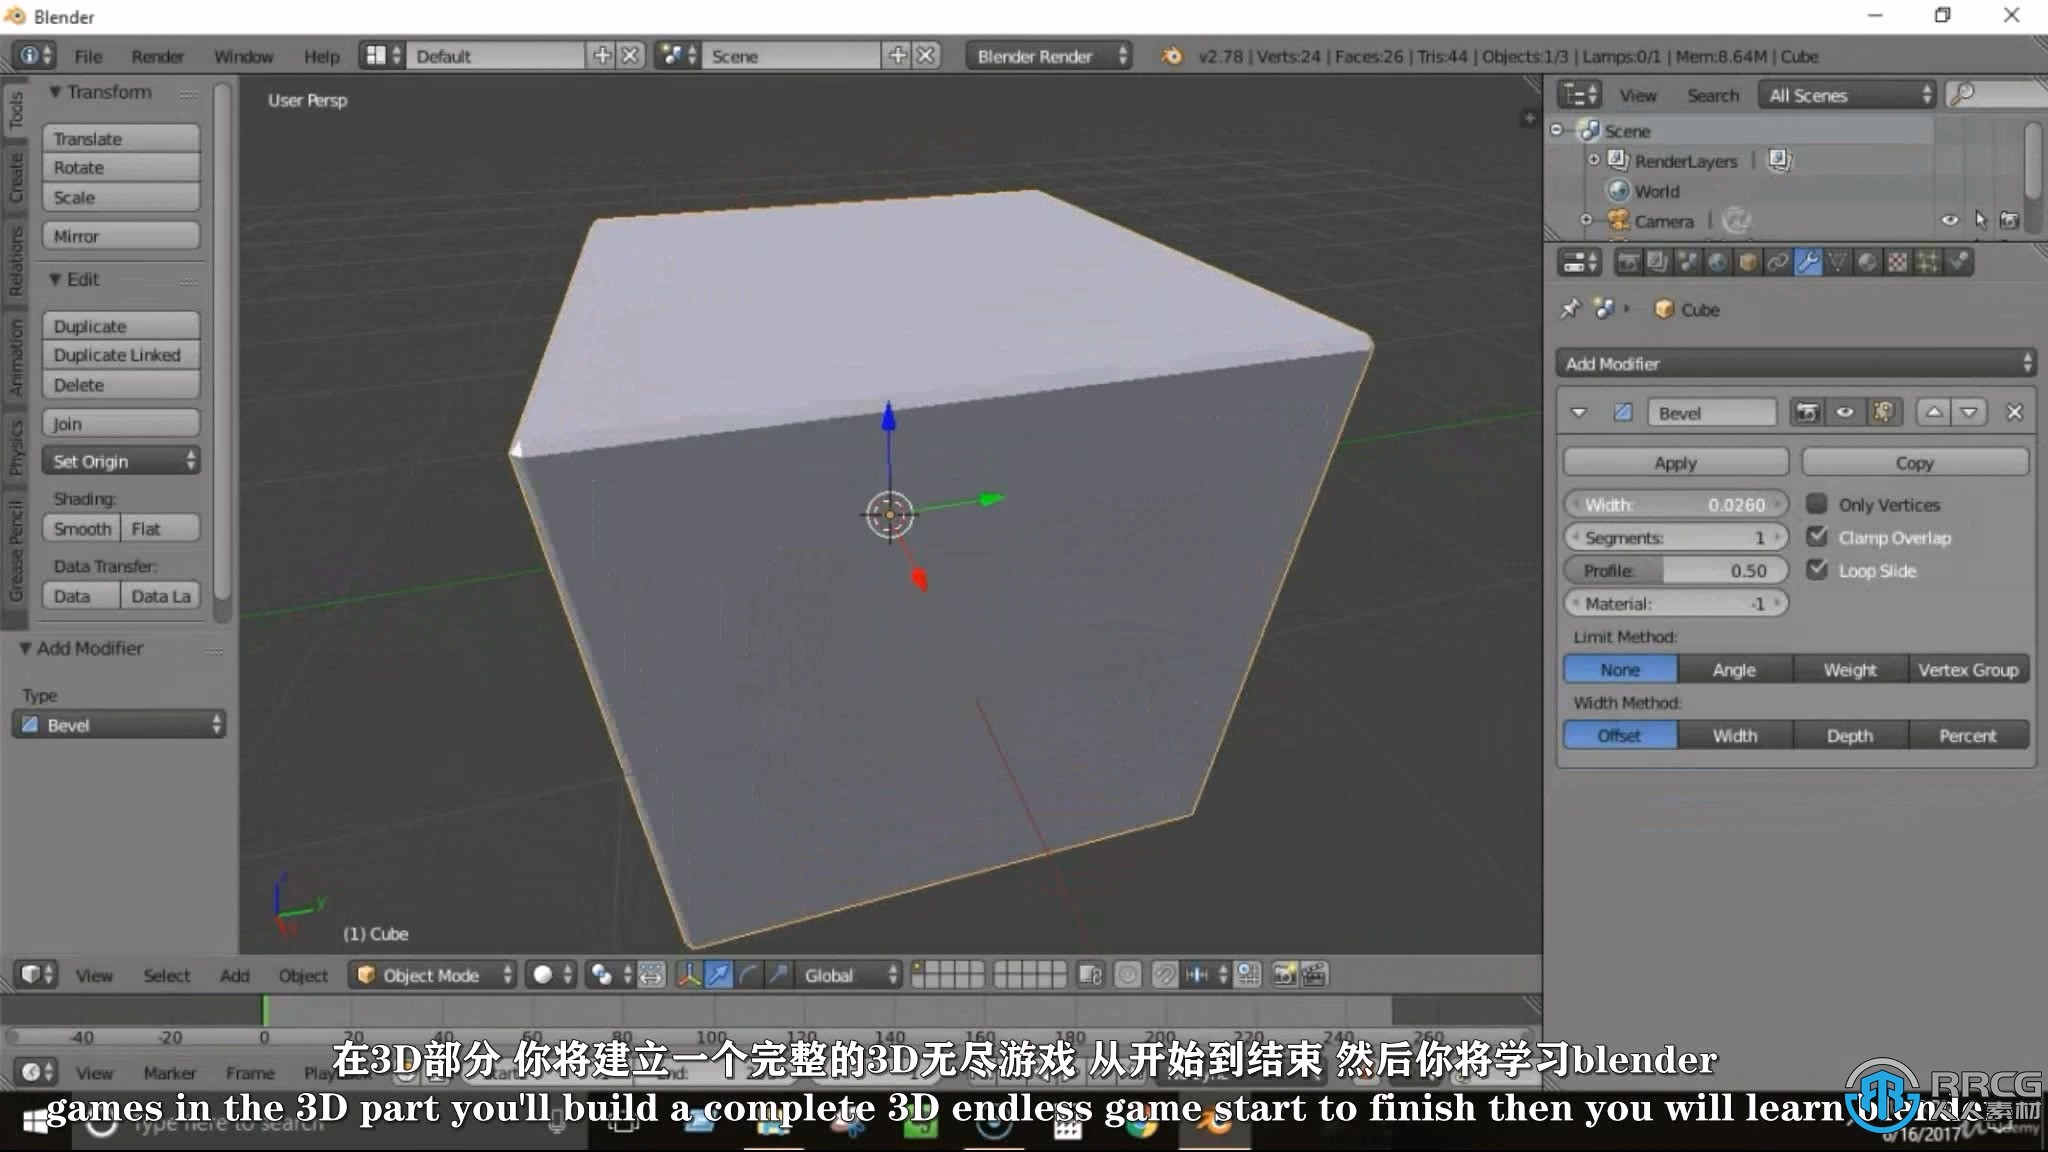 【中文字幕】Unity游戏设计开发2D和3D项目实例训练视频教程